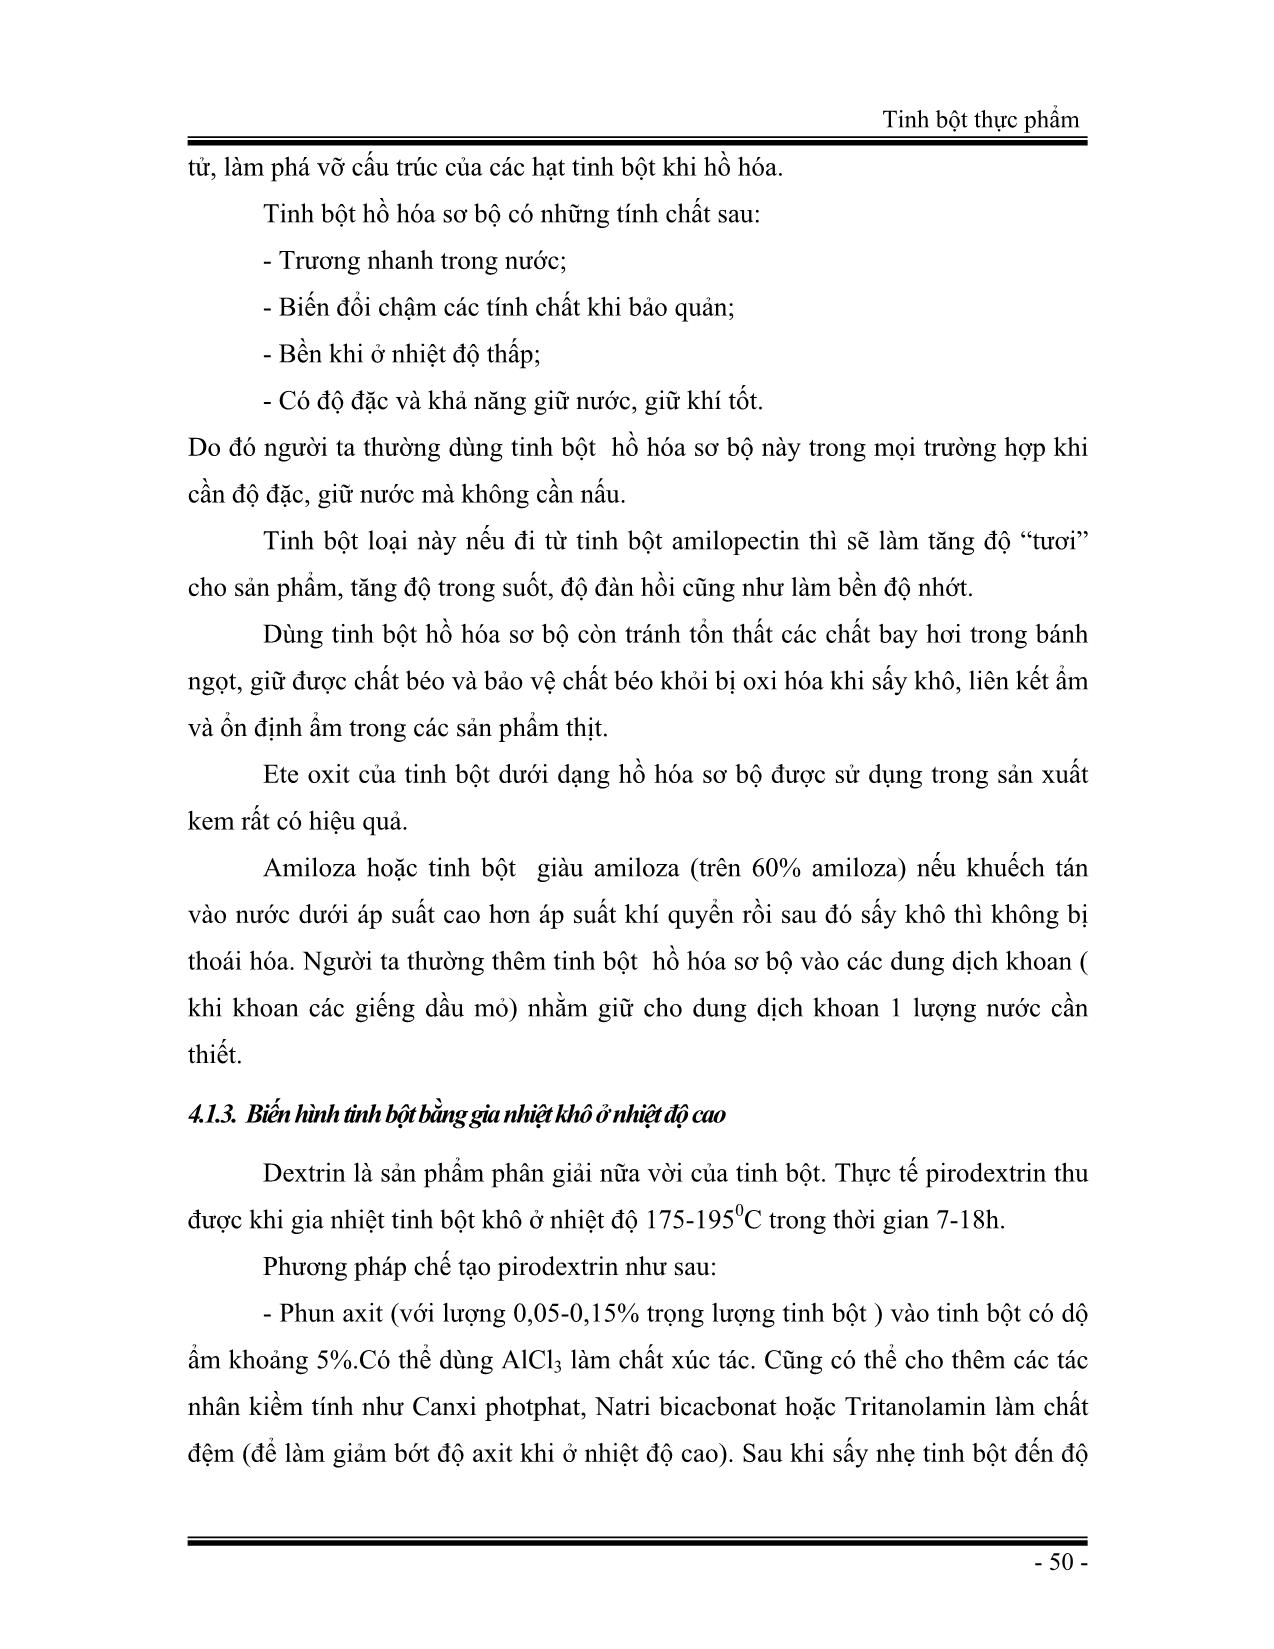 Giáo trình Tinh bột thực phẩm (Phần 2) trang 2